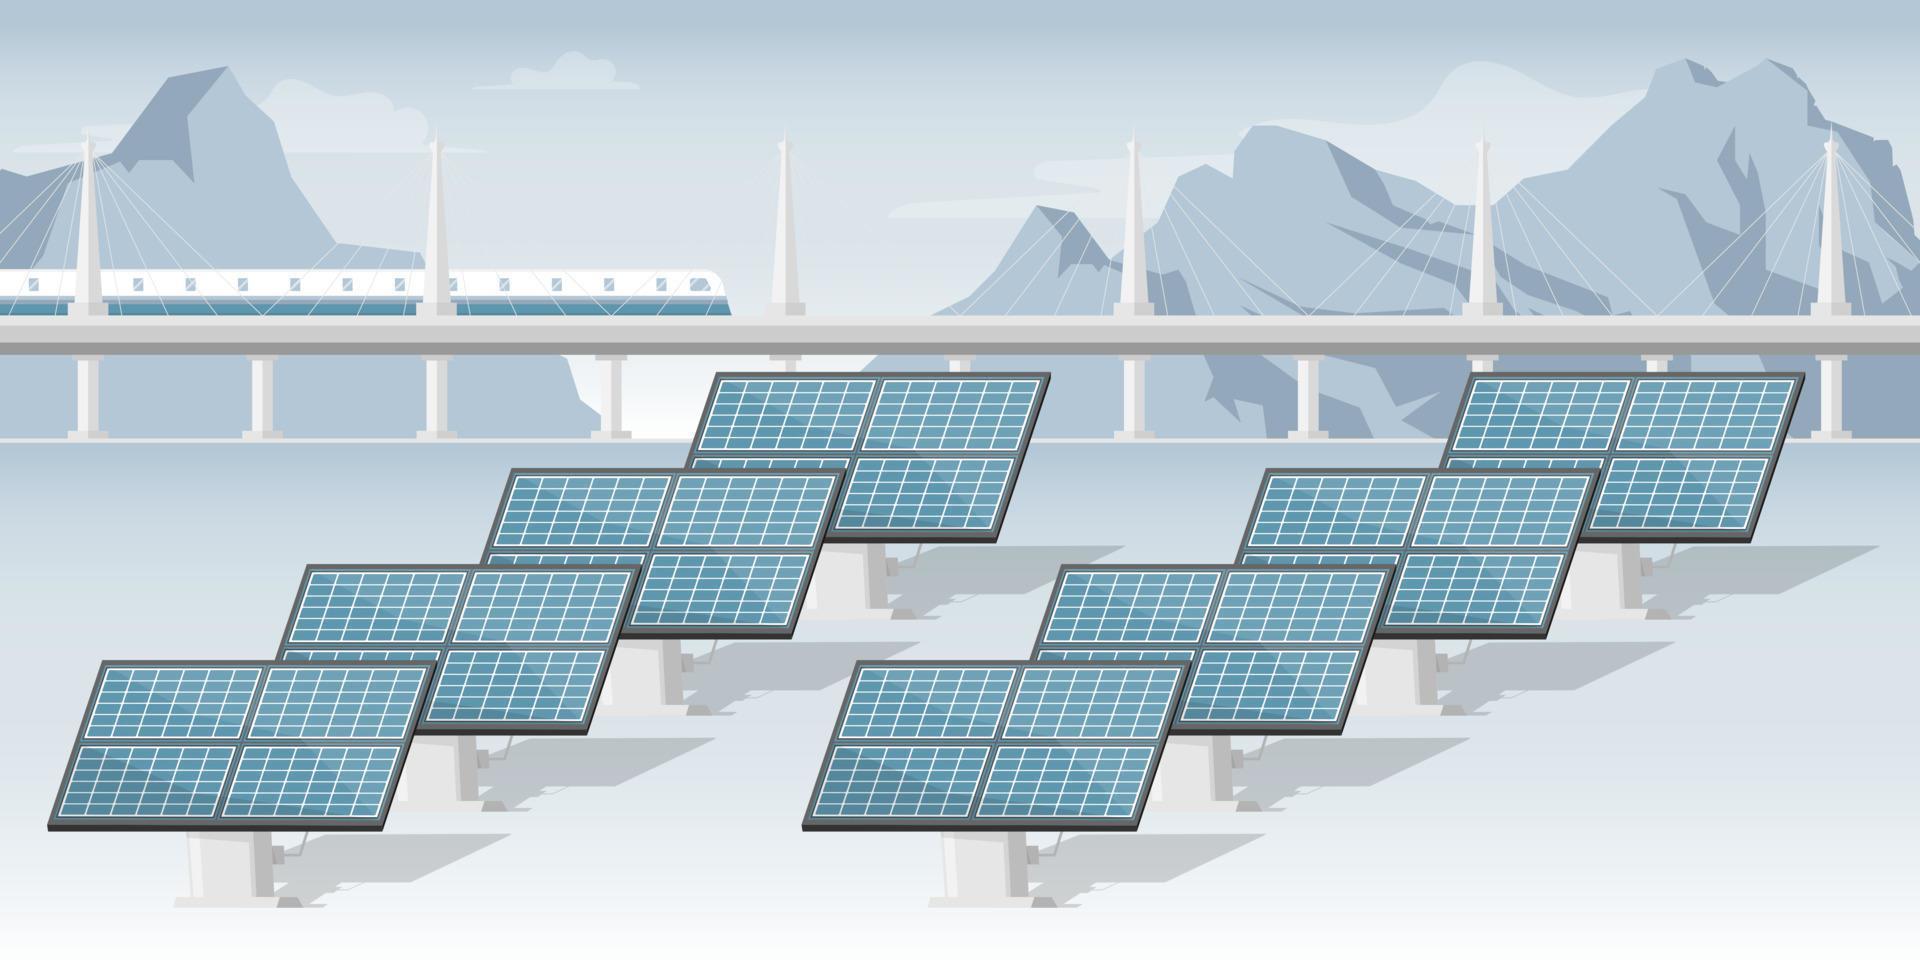 granja de paneles solares en regiones frías con montaña, tren y puente, ilustración de marketing digital. vector